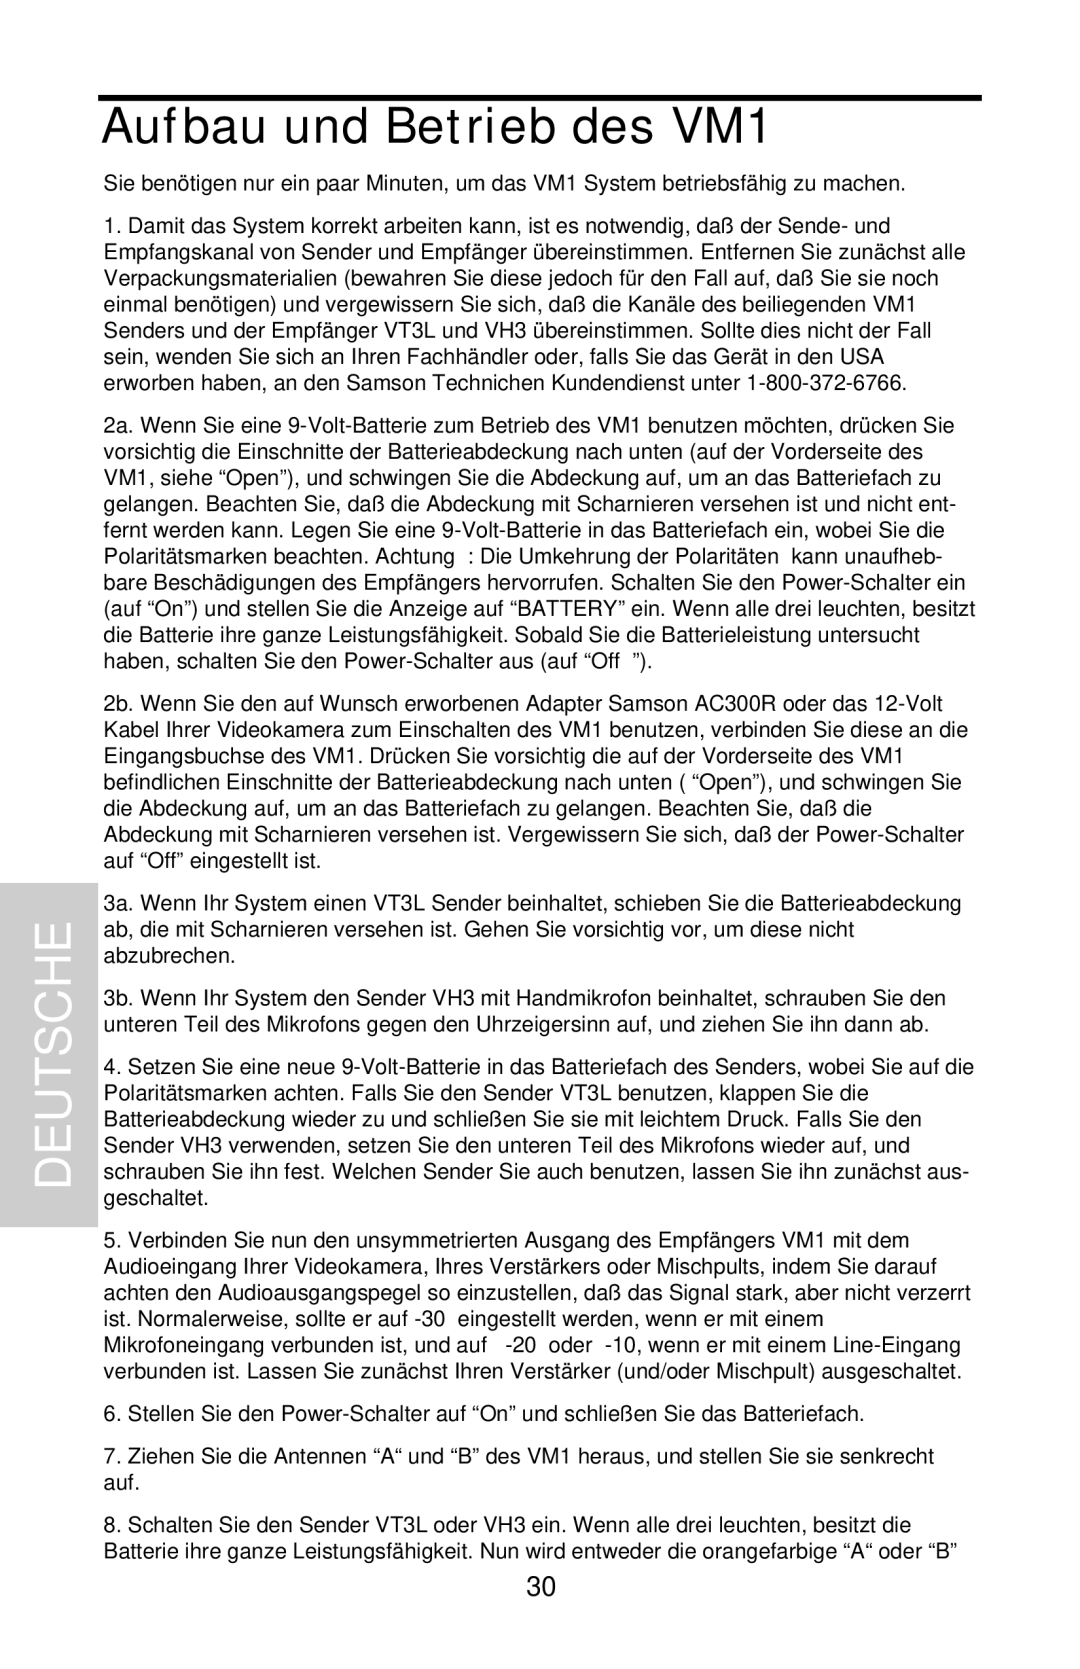 Samson VHF Micro TRUE DIVERSITY WIRELESS owner manual Aufbau und Betrieb des VM1, Deutsche 